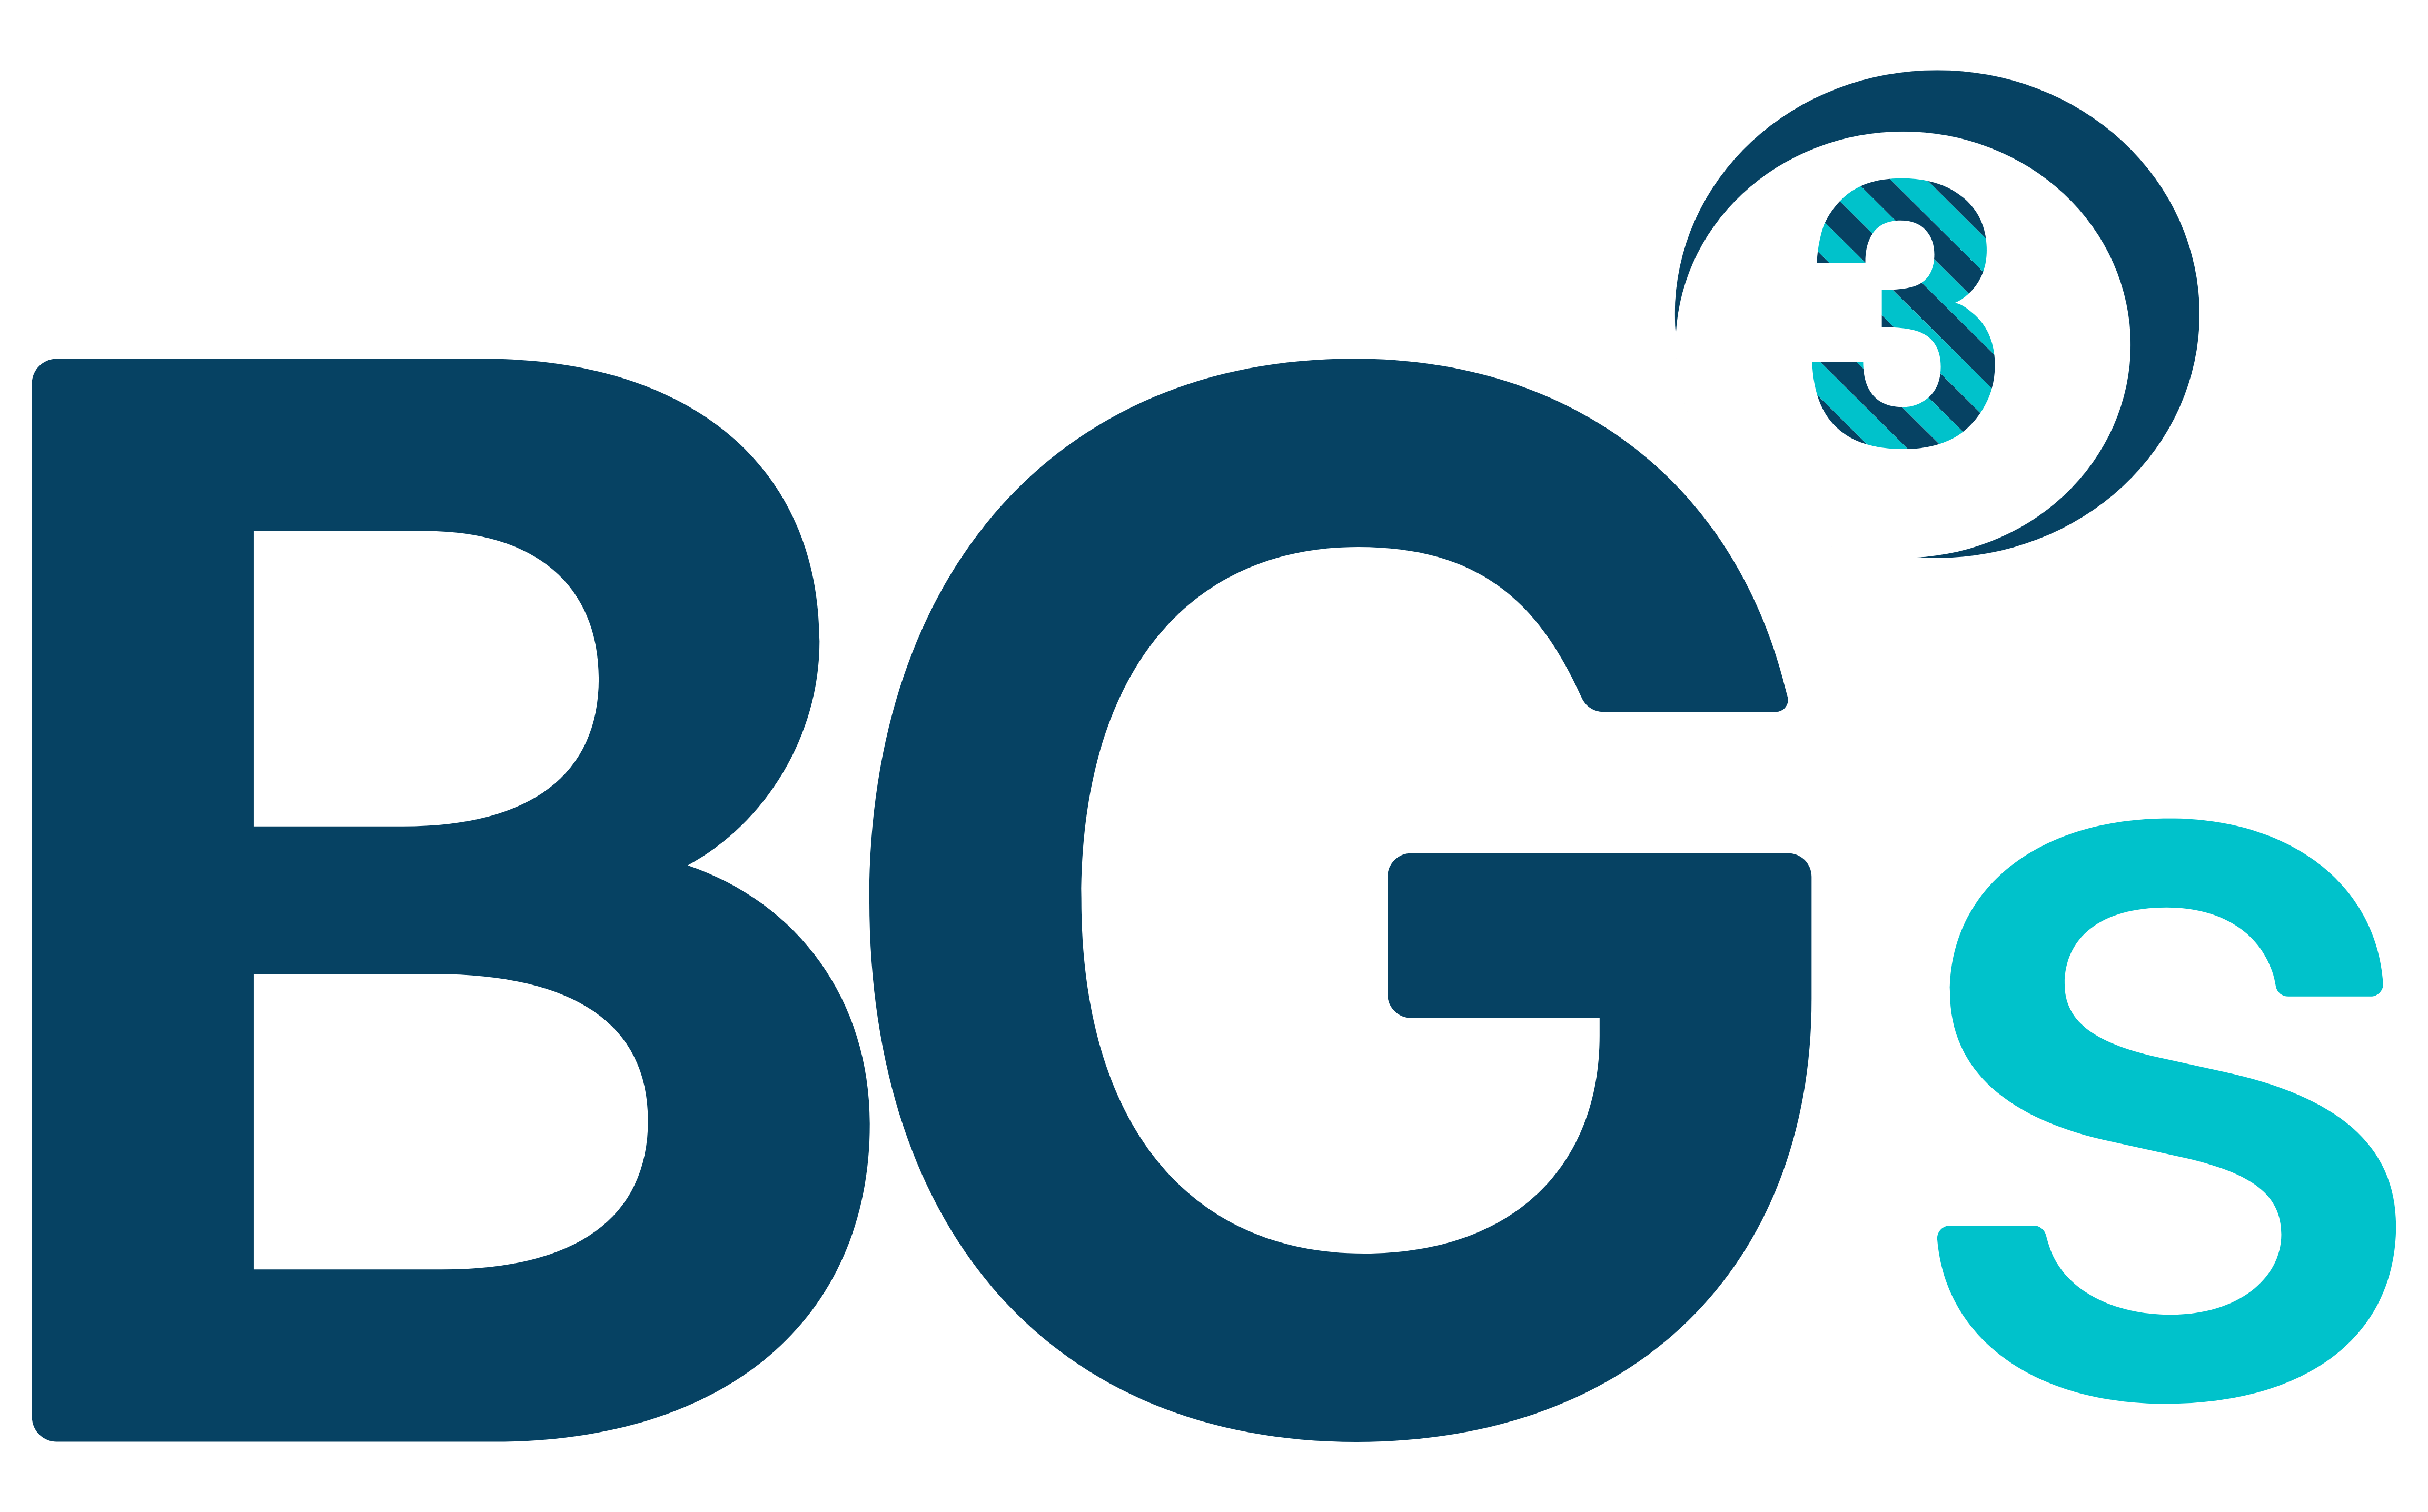 Bannière simple BG3S